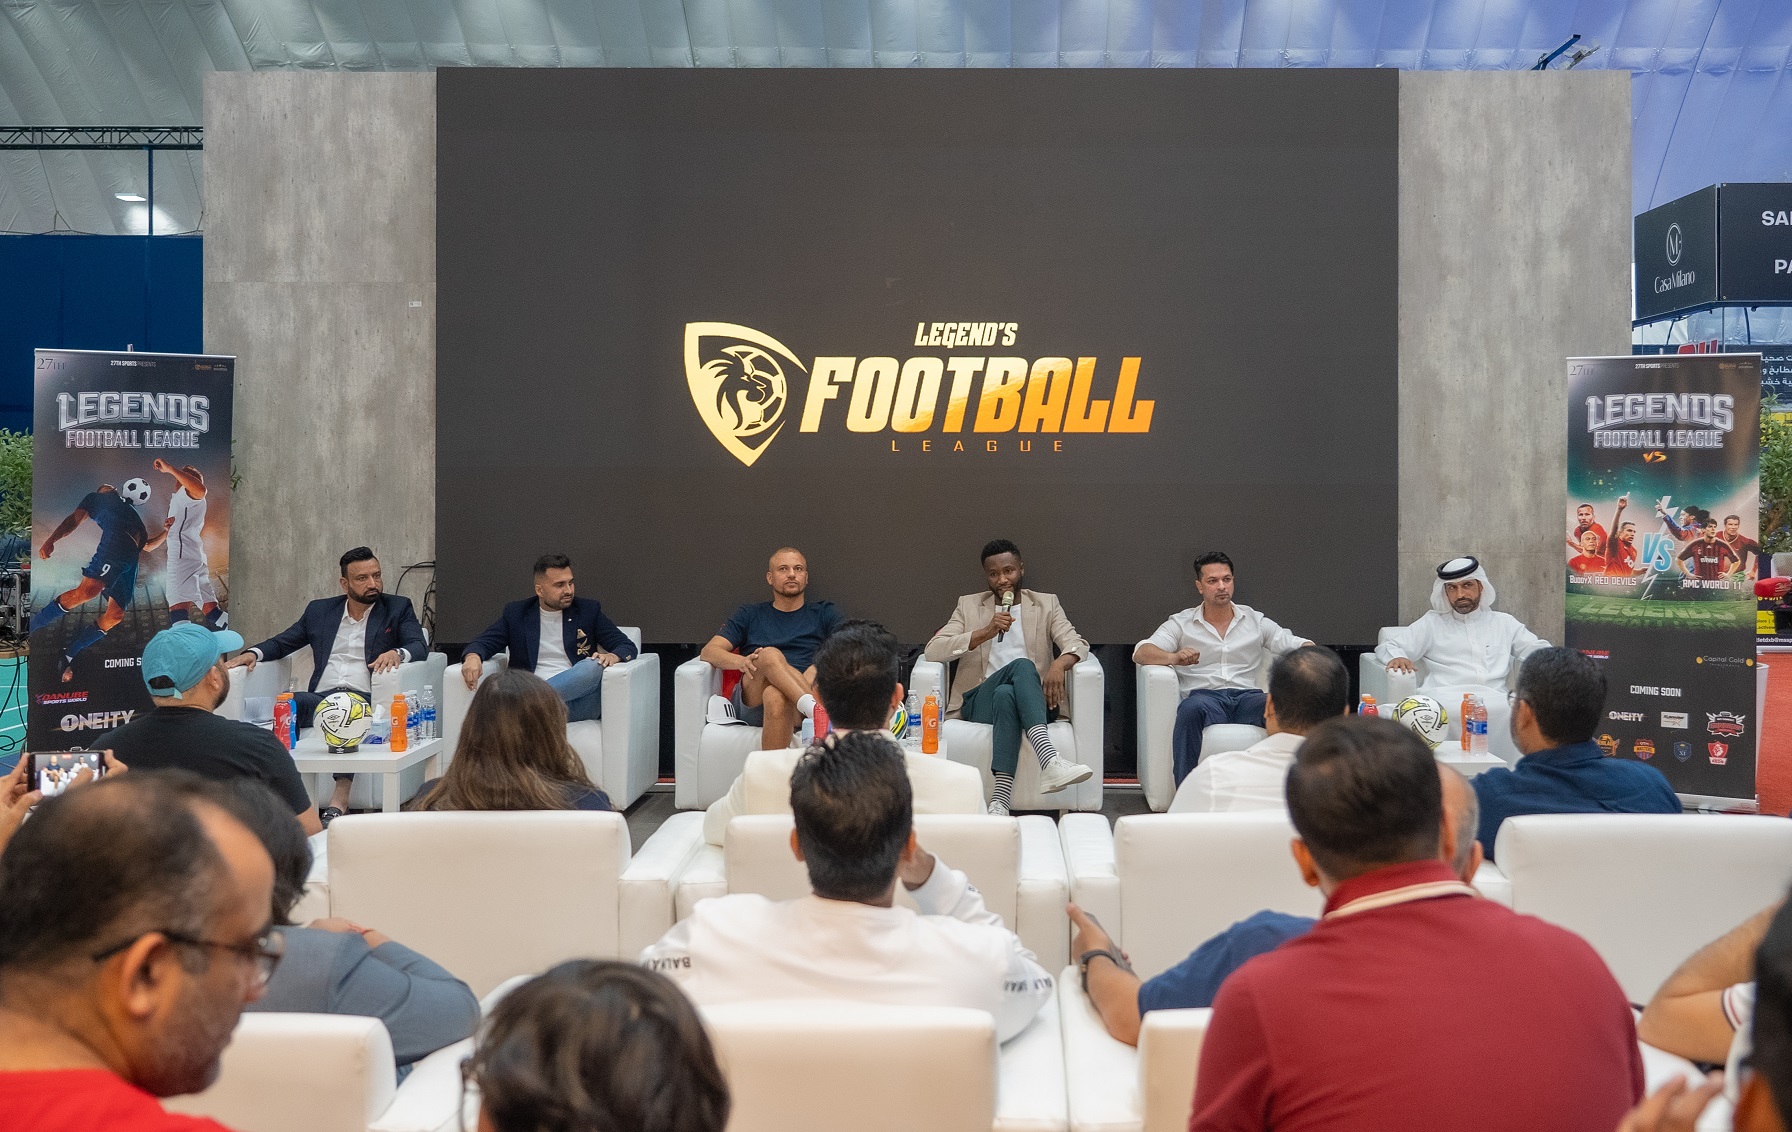 Legend's Football League headed for a spectacular launch in Dubai on Nov 18